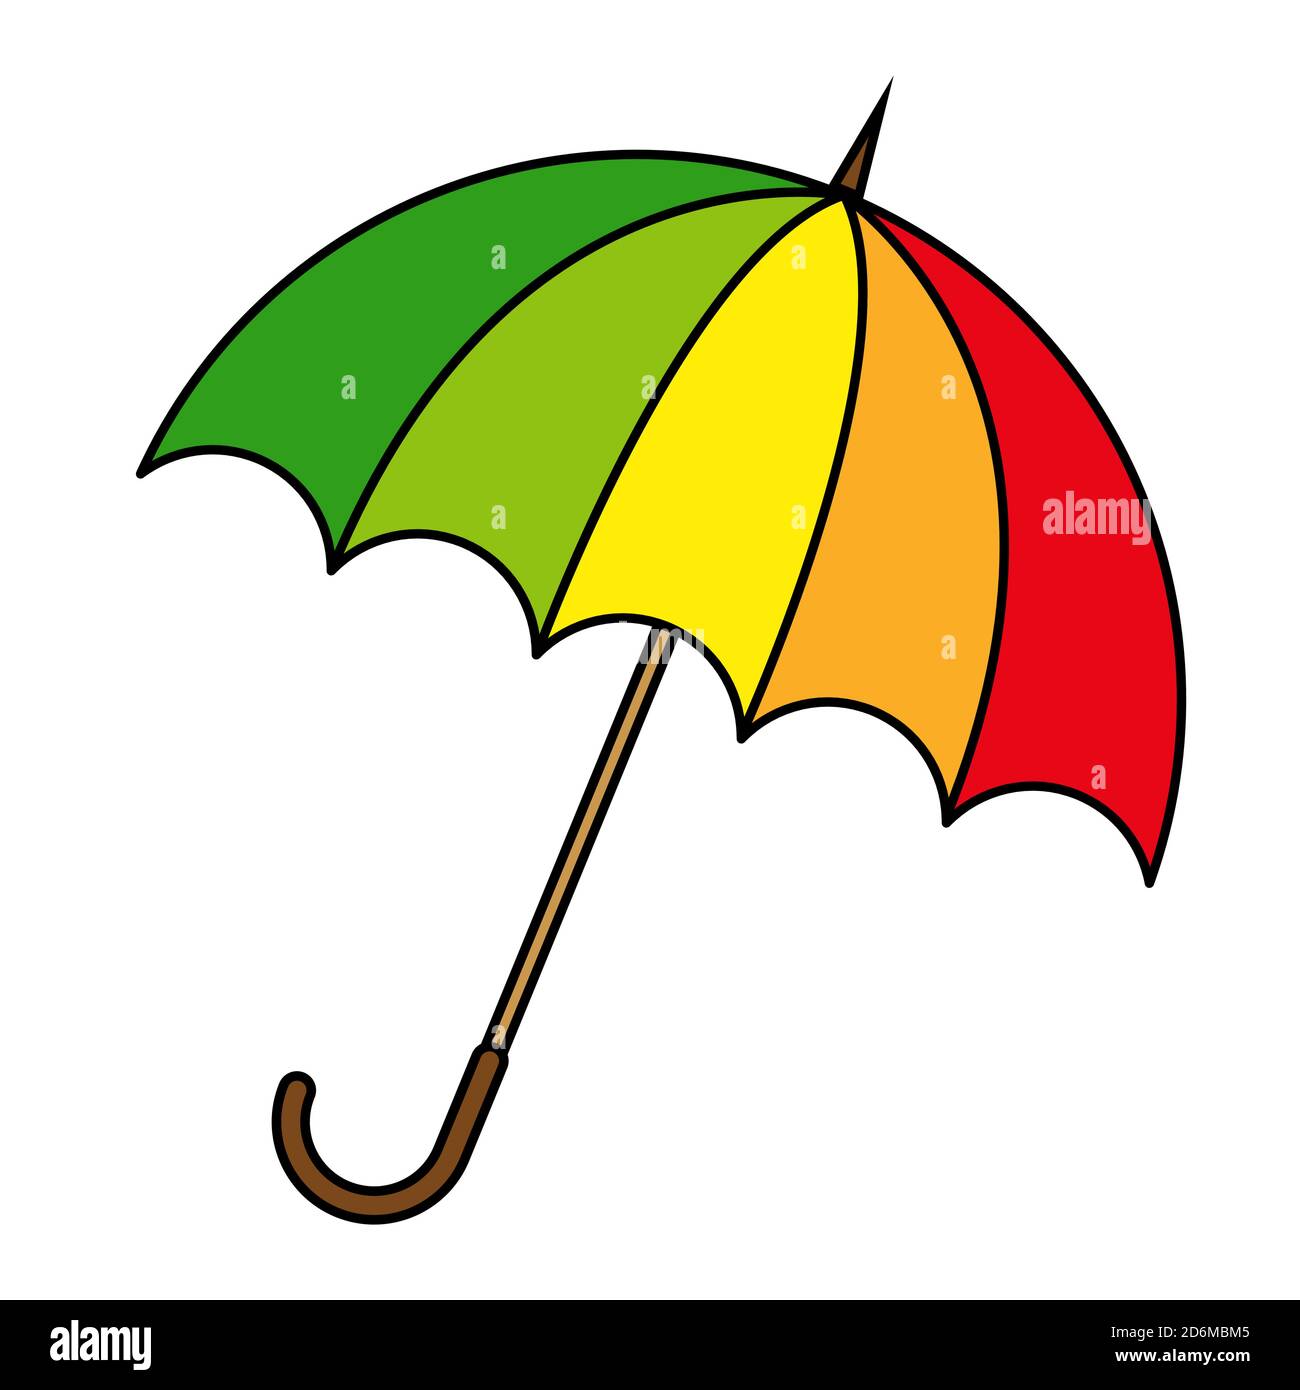 Regenschirm Cartoon Vektor Illustration. Sonnenschirm Clip Art isoliert auf weiß. Symbol für herbstlichen Regenschutz. Farbenfrohes, saisonales Design. EPS 10-Zeichnung. A Stock Vektor